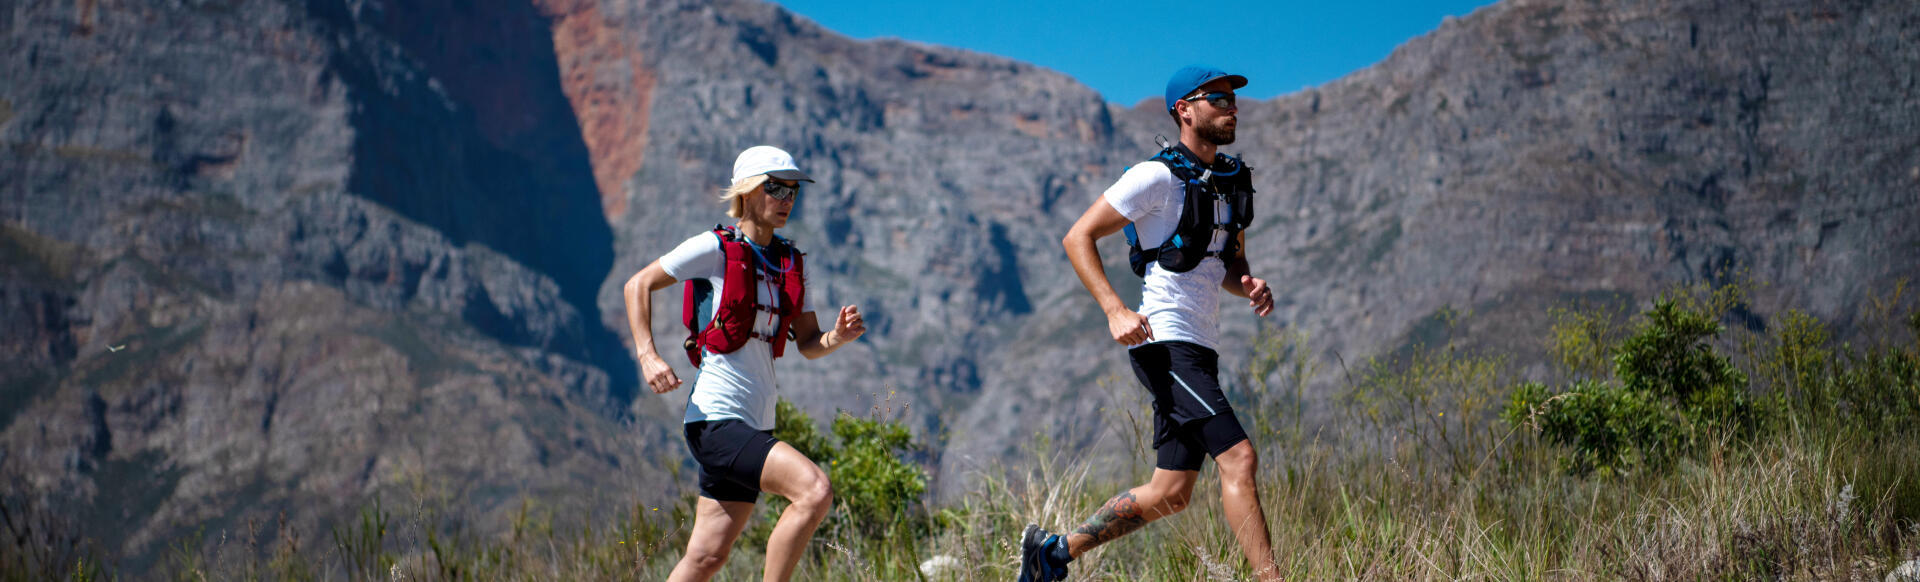 un homme et une femme courent par temps chaud à la montagne